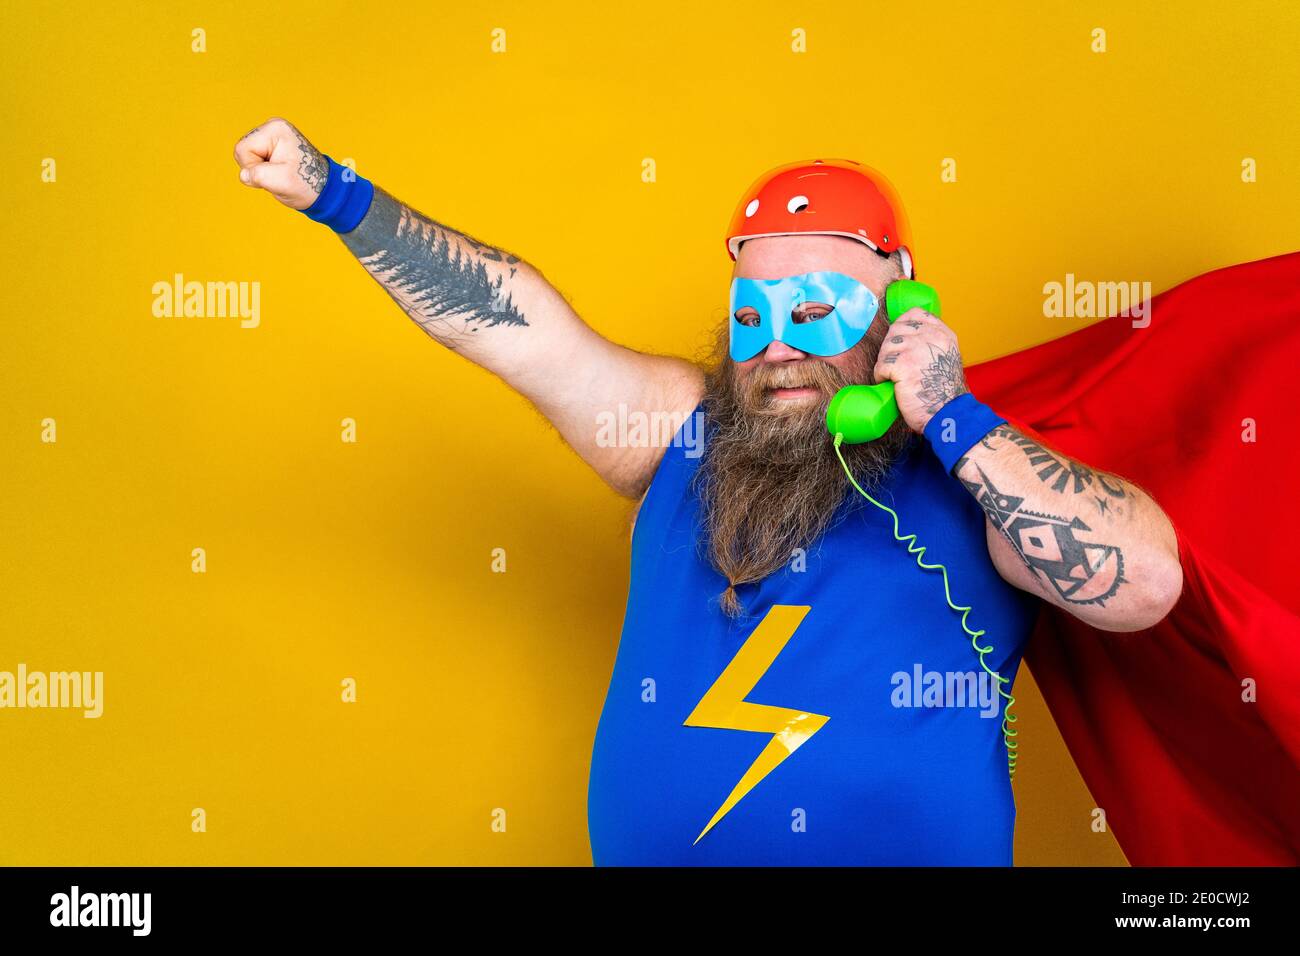 Drôle de gros homme avec le costume de super-héros agissant comme surhumain avec des pouvoirs spéciaux, portrait sur fond coloré Banque D'Images